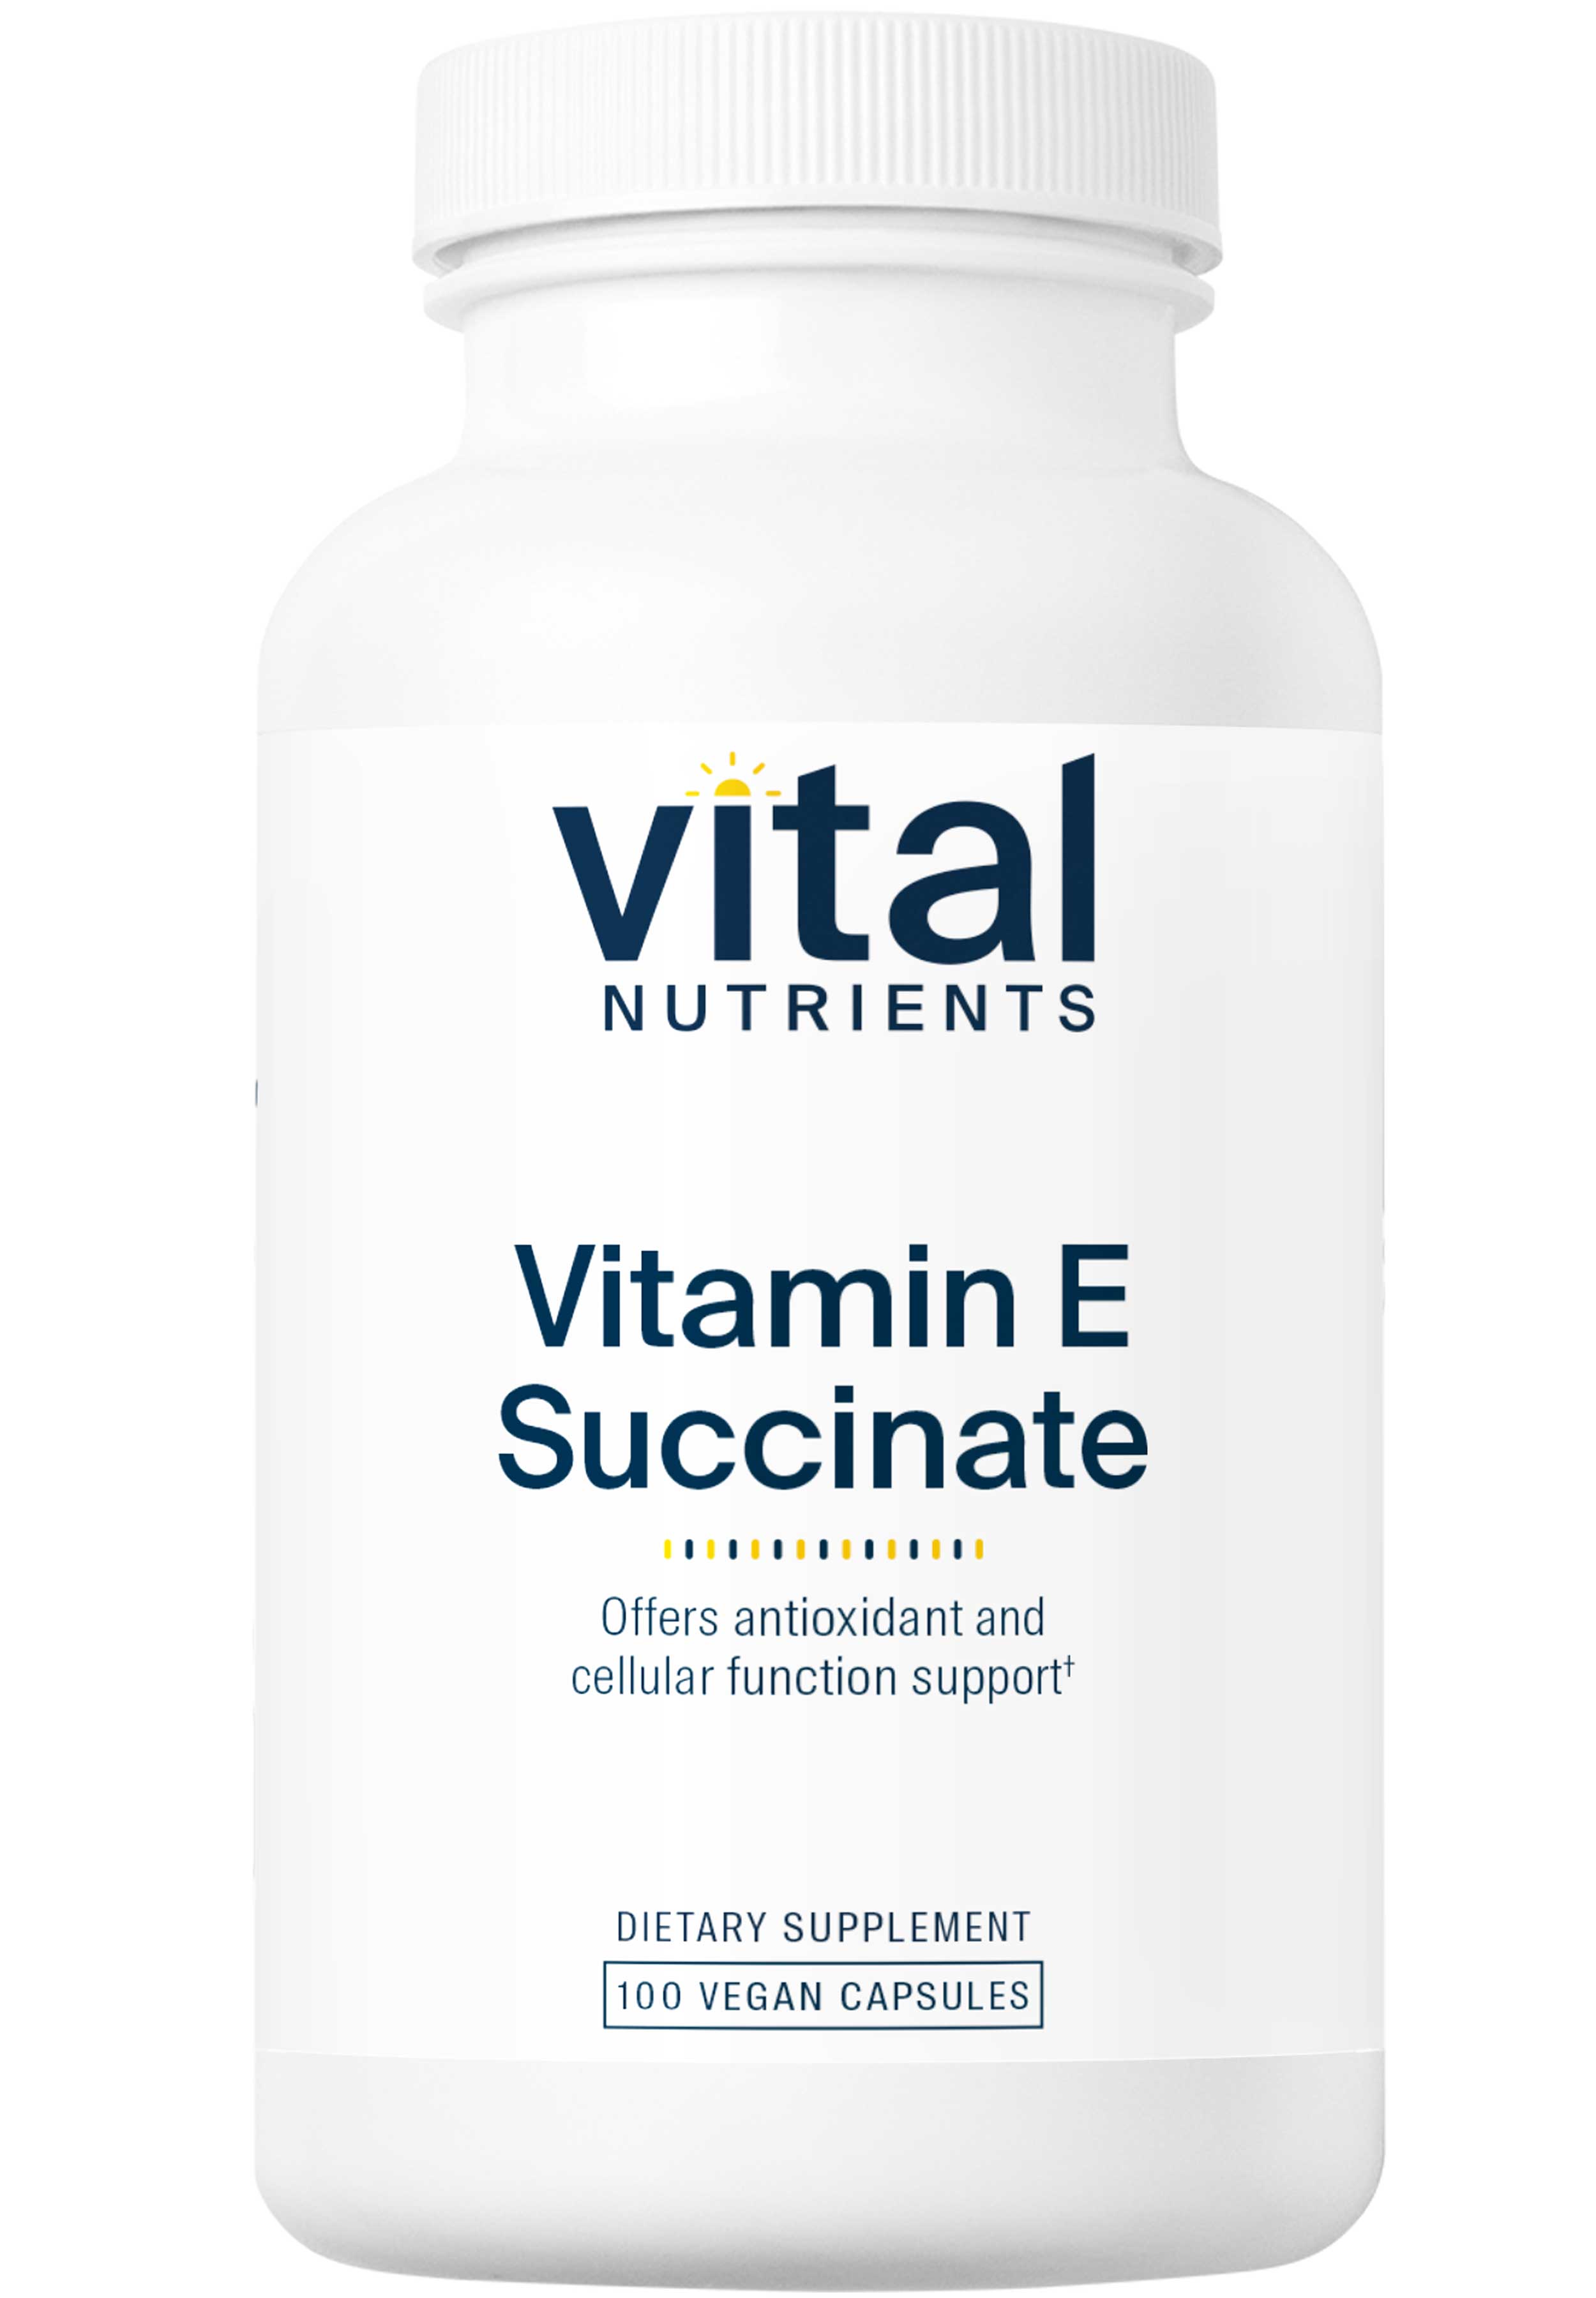 Vital Nutrients Vitamin E Succinate